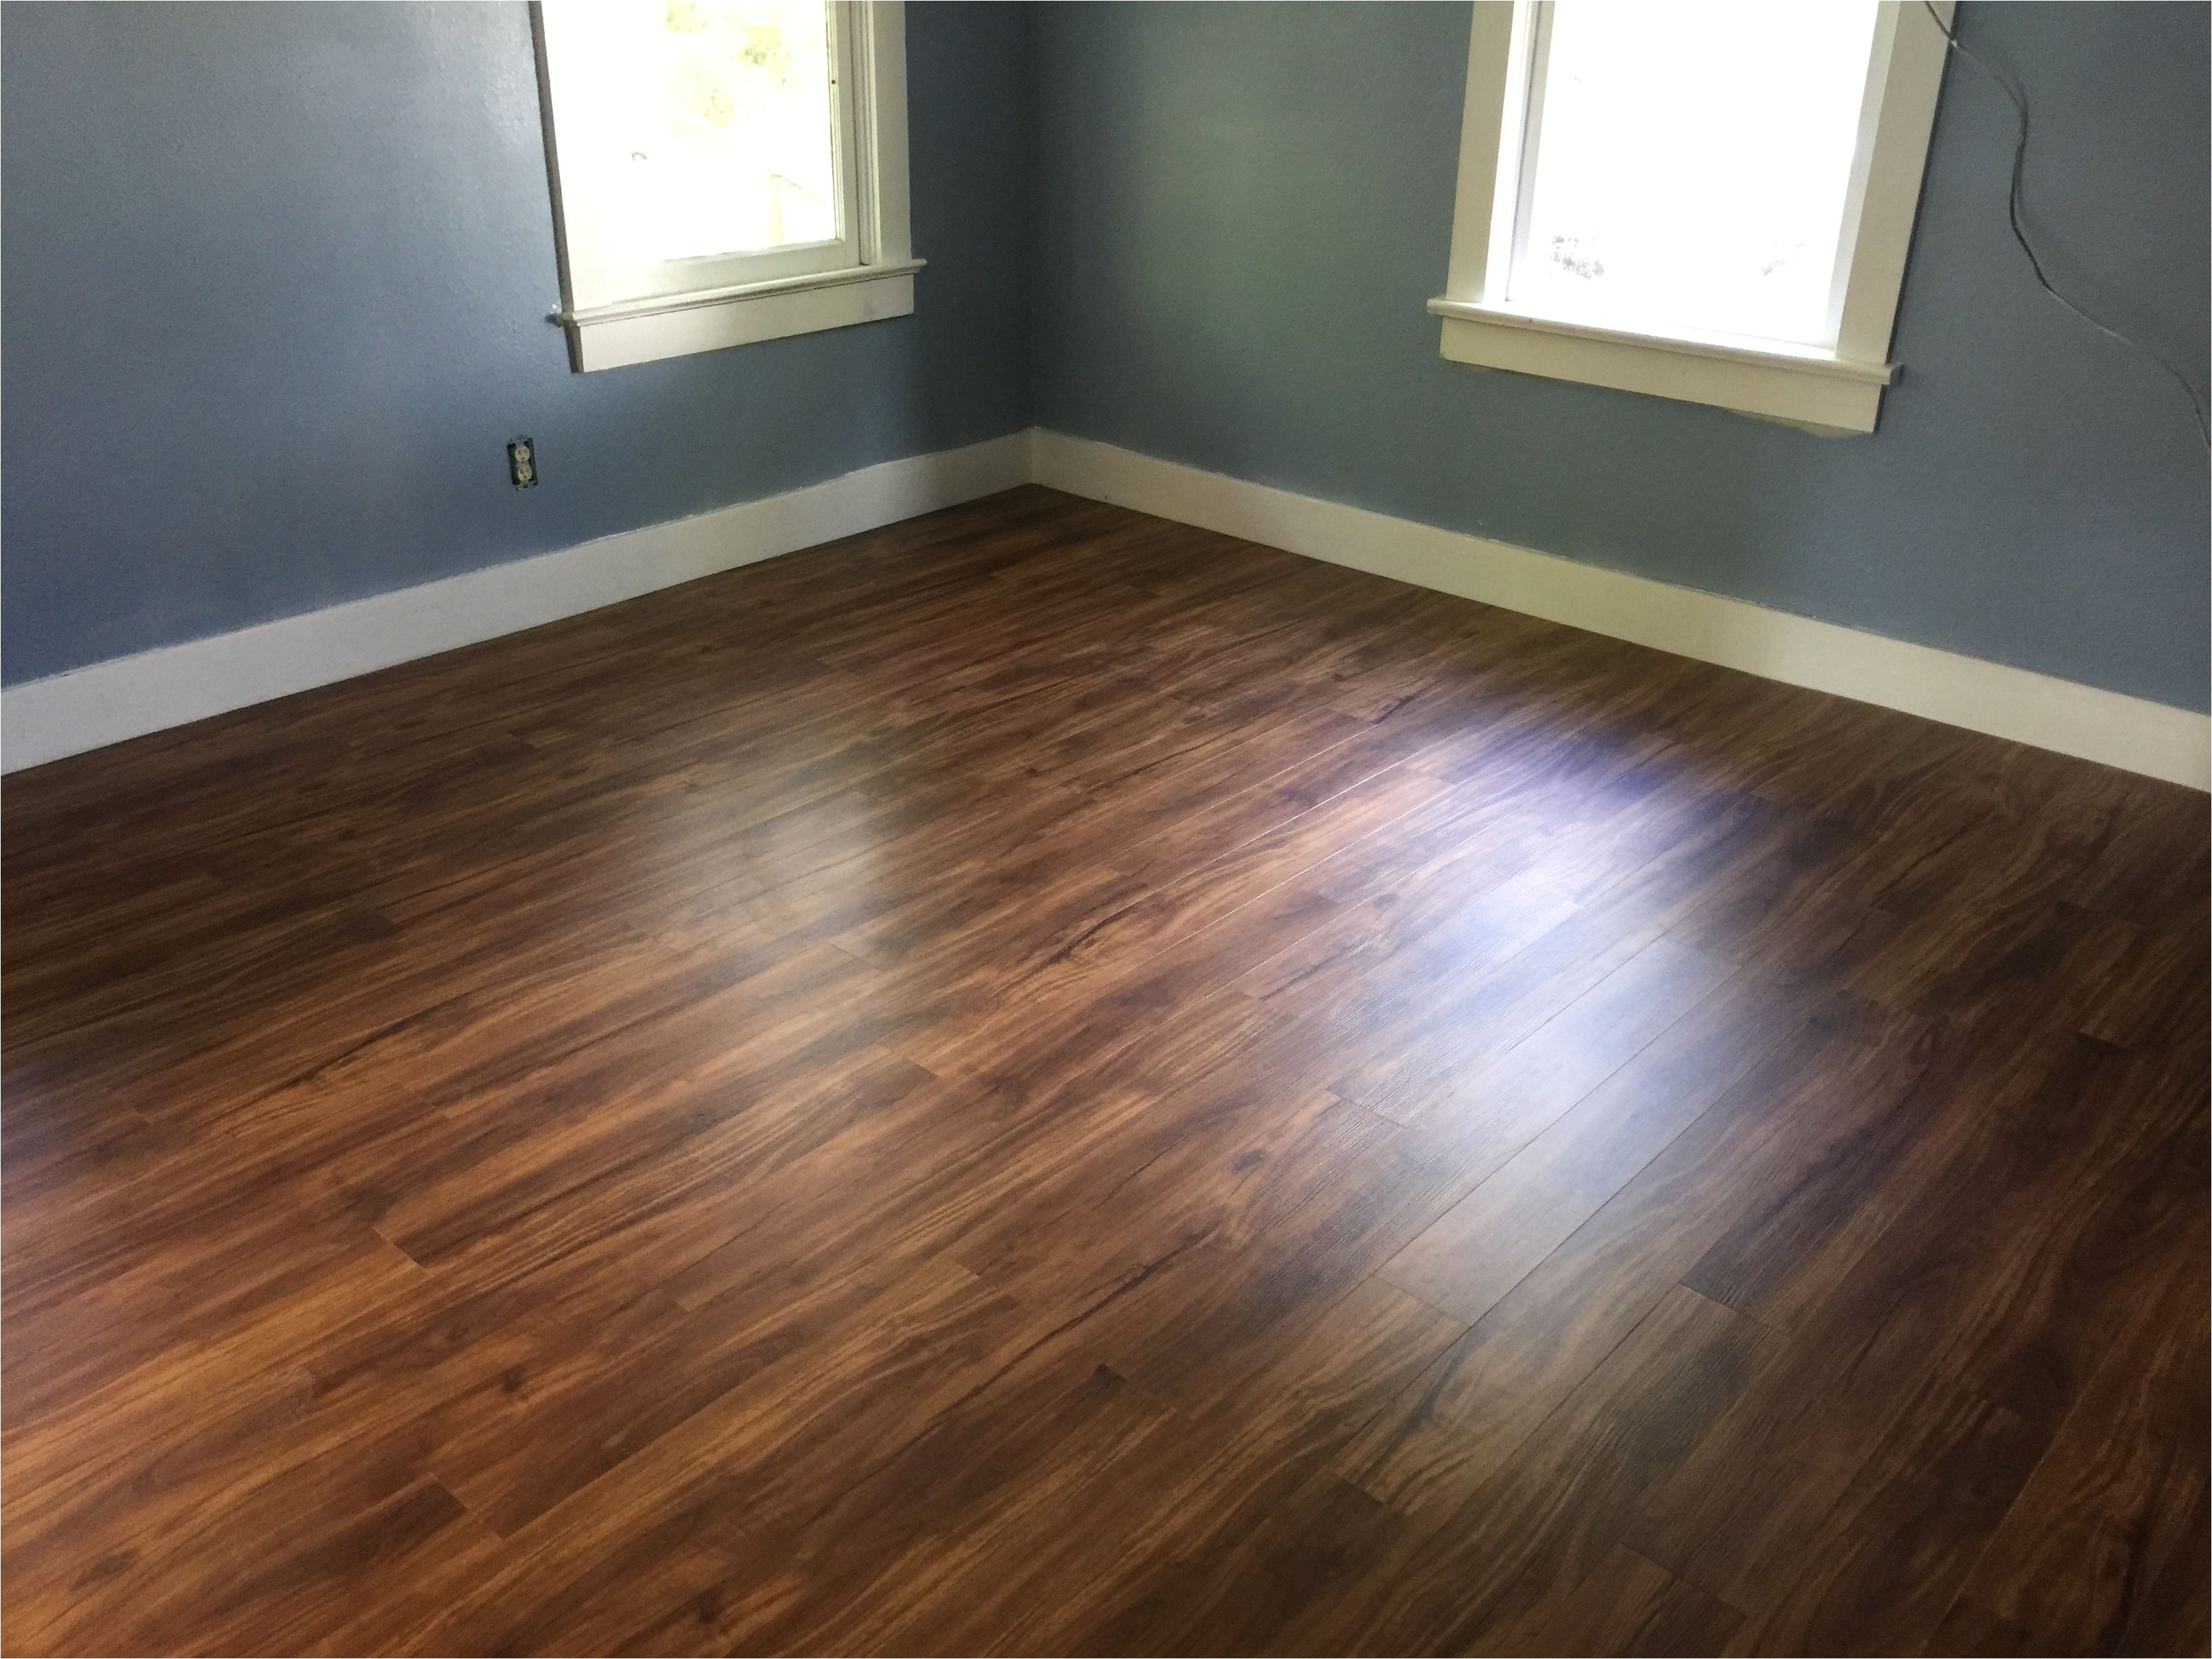 coretec plus flooring in gold coast acacia acacia flooring vinyl plank flooring kitchen